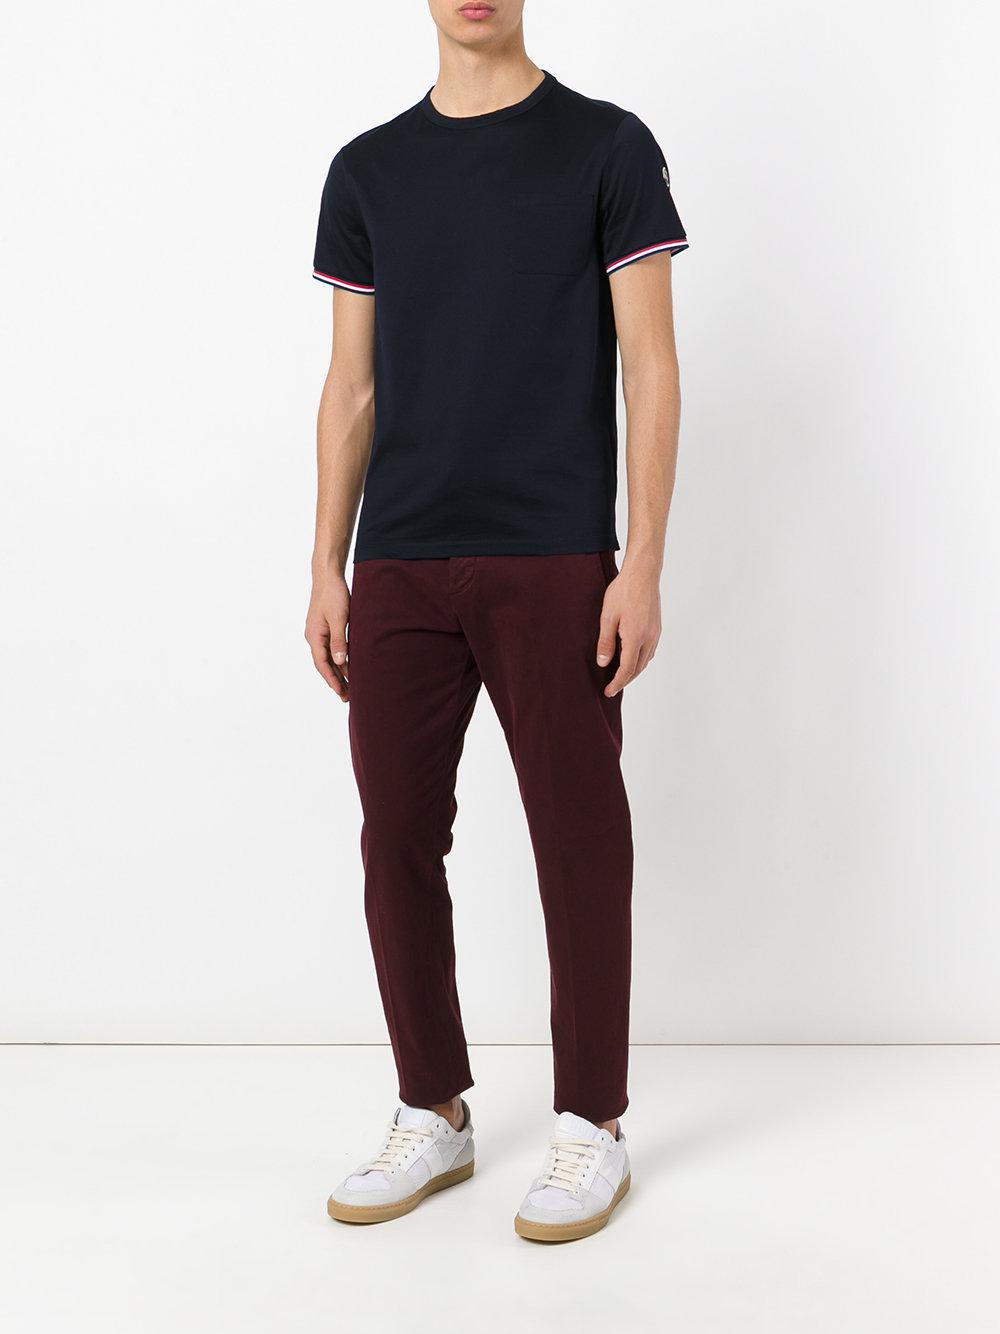 Moncler Cotton Tri-colour Striped Trim T-shirt in Blue for Men - Lyst